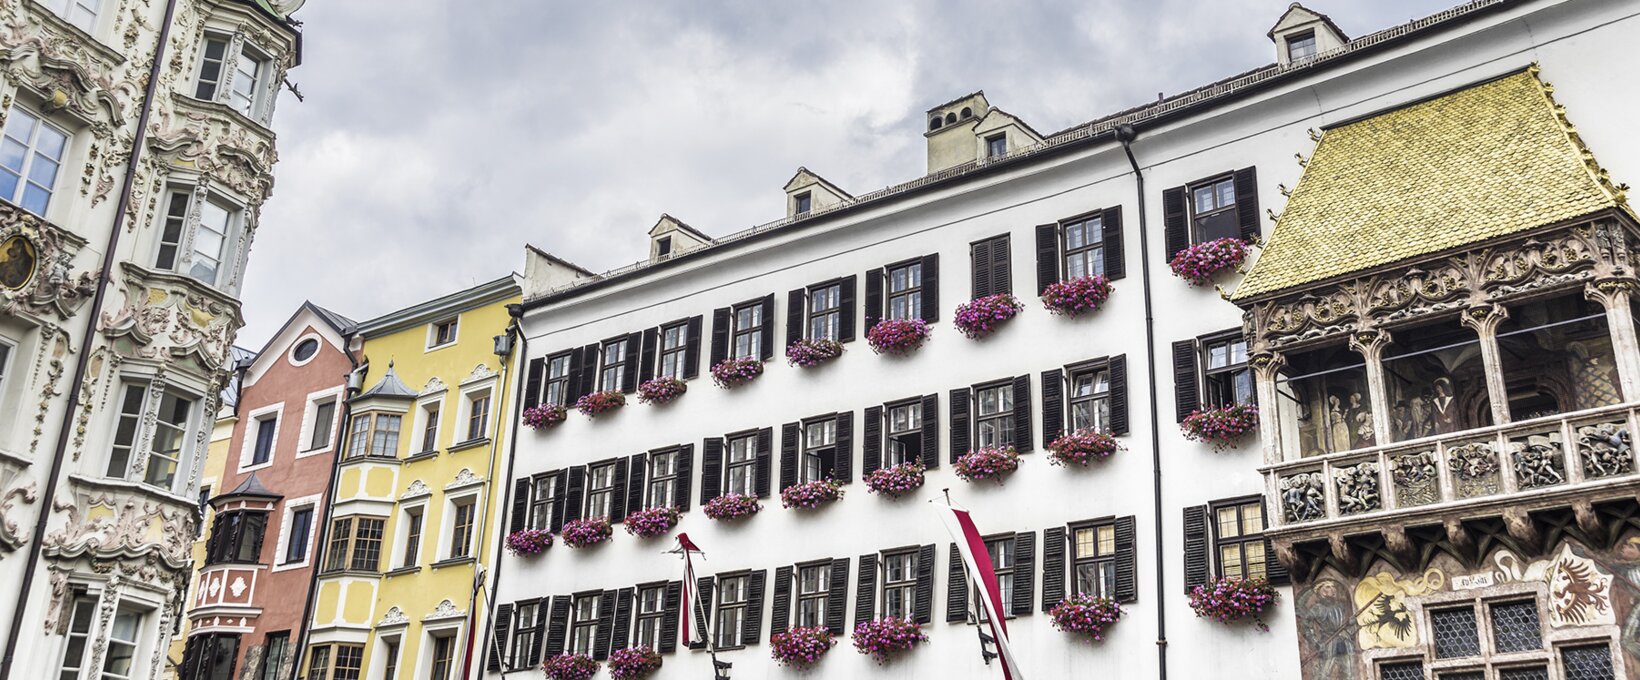 Goldenes Dachl in der Altstadt  | Innsbruck